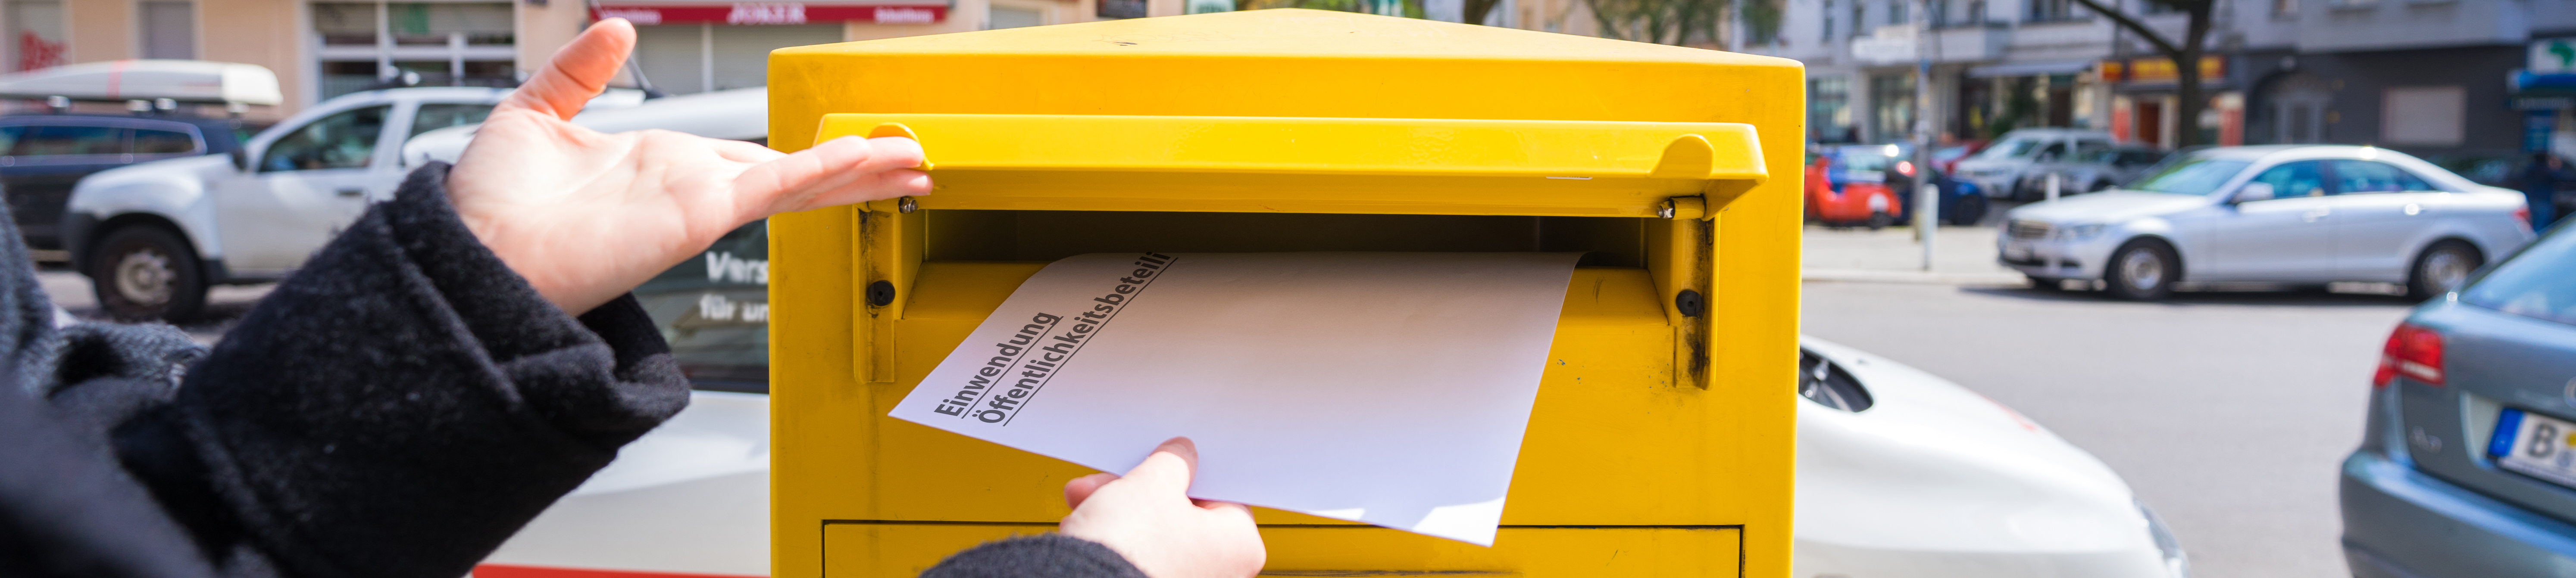 Einwurf eines Umschlags mit den Schlagwörtern Einwendung und Öffentlichkeitsbeteiligung in Postbriefkasten  